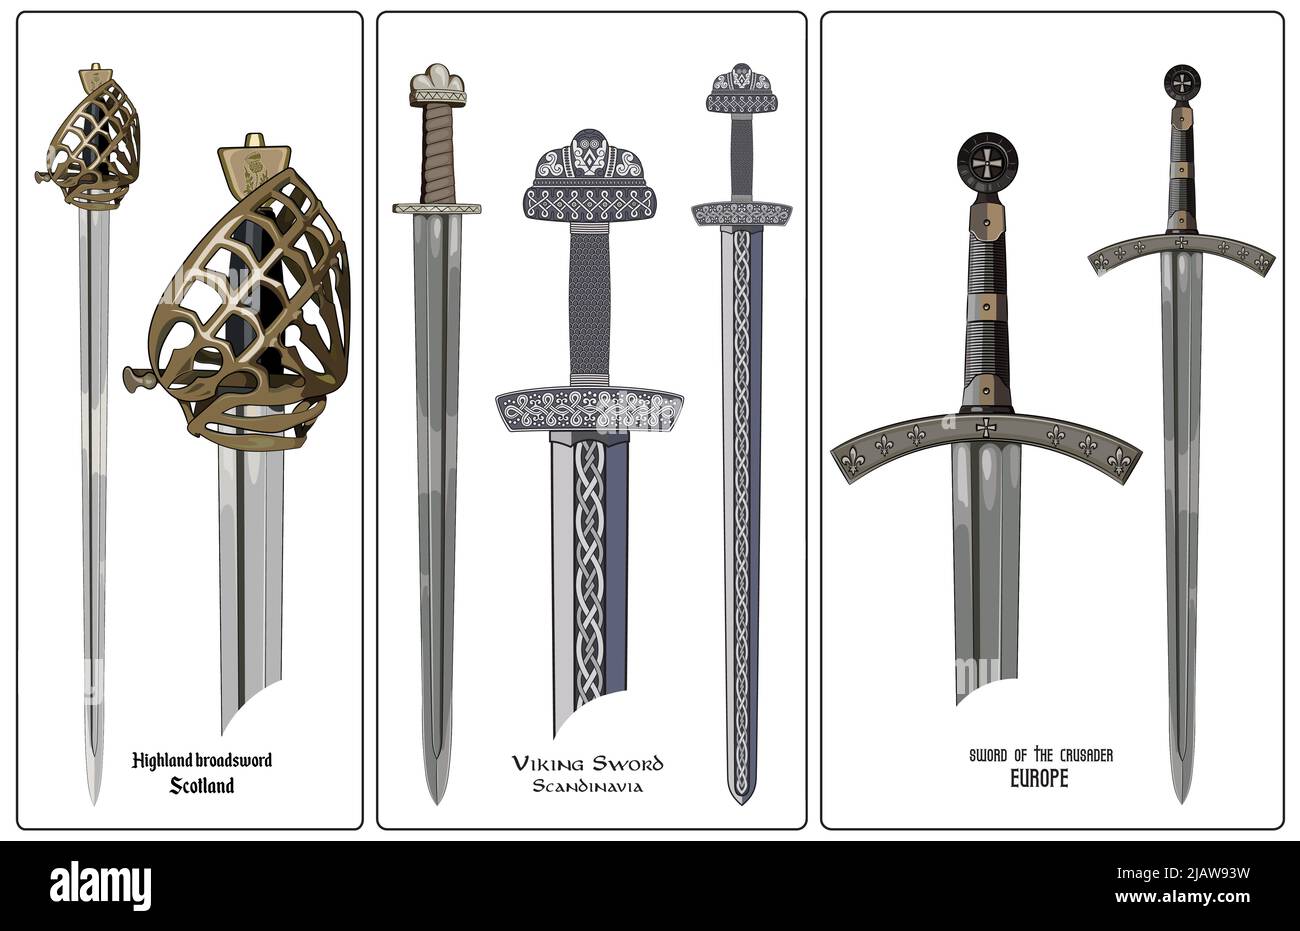 Arma dell'Europa antica - insieme di spade. La spada di Vichingo, i cavalieri di spada, i crociati, la spada degli altipiani della Scozia. Illustrazione Vettoriale